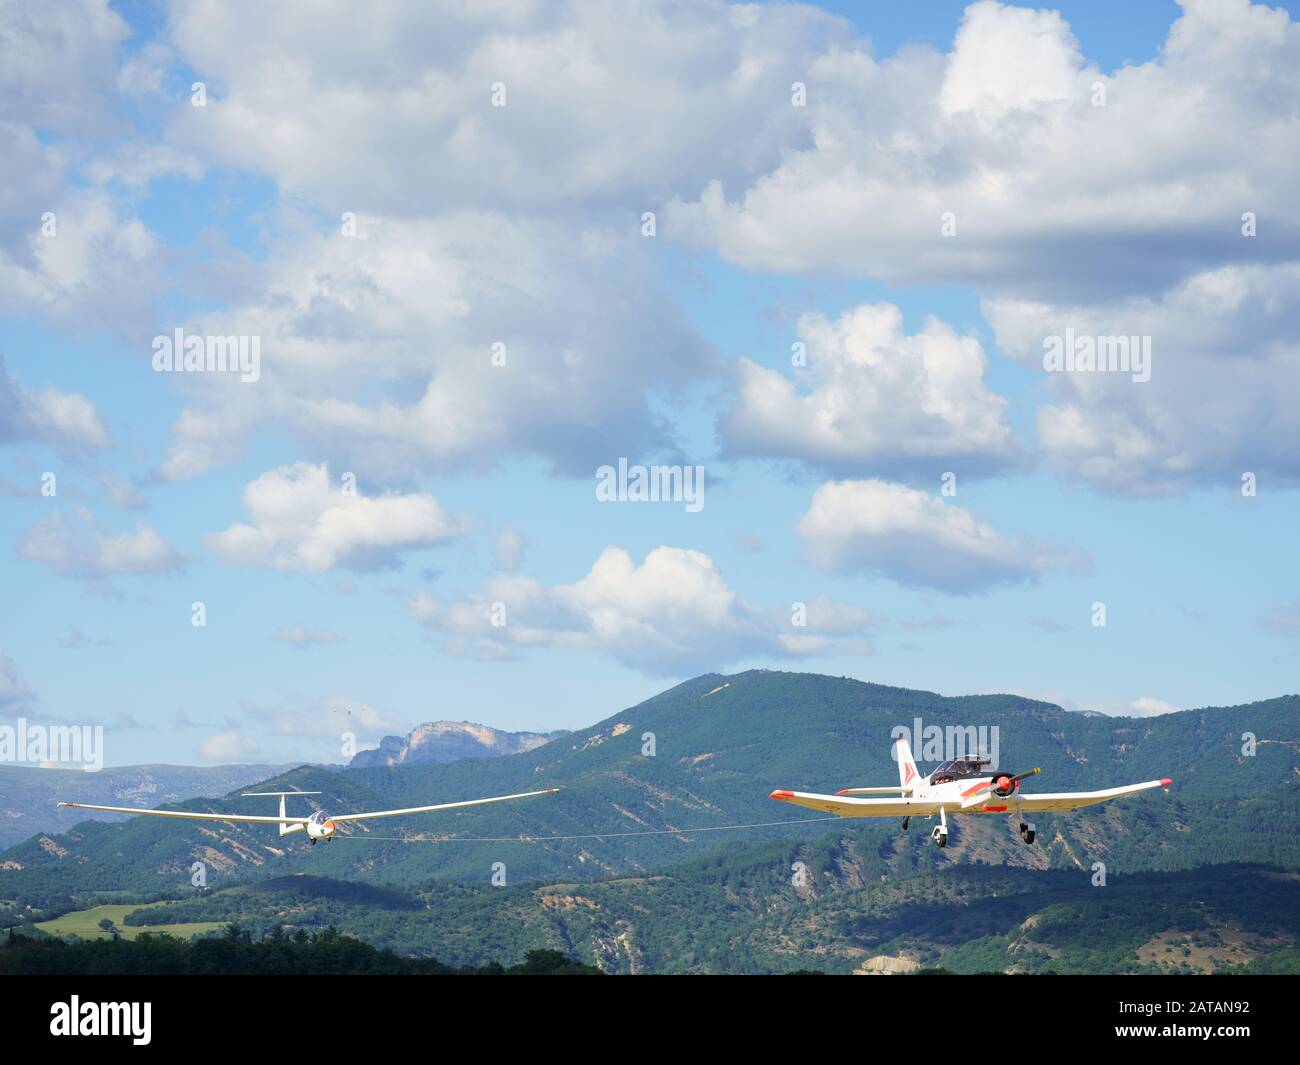 Voilier aérospatial par un avion à moteur unique. Aéroport de Château-Arnoux Saint-Auban, Alpes de haute-Provence, France. Banque D'Images